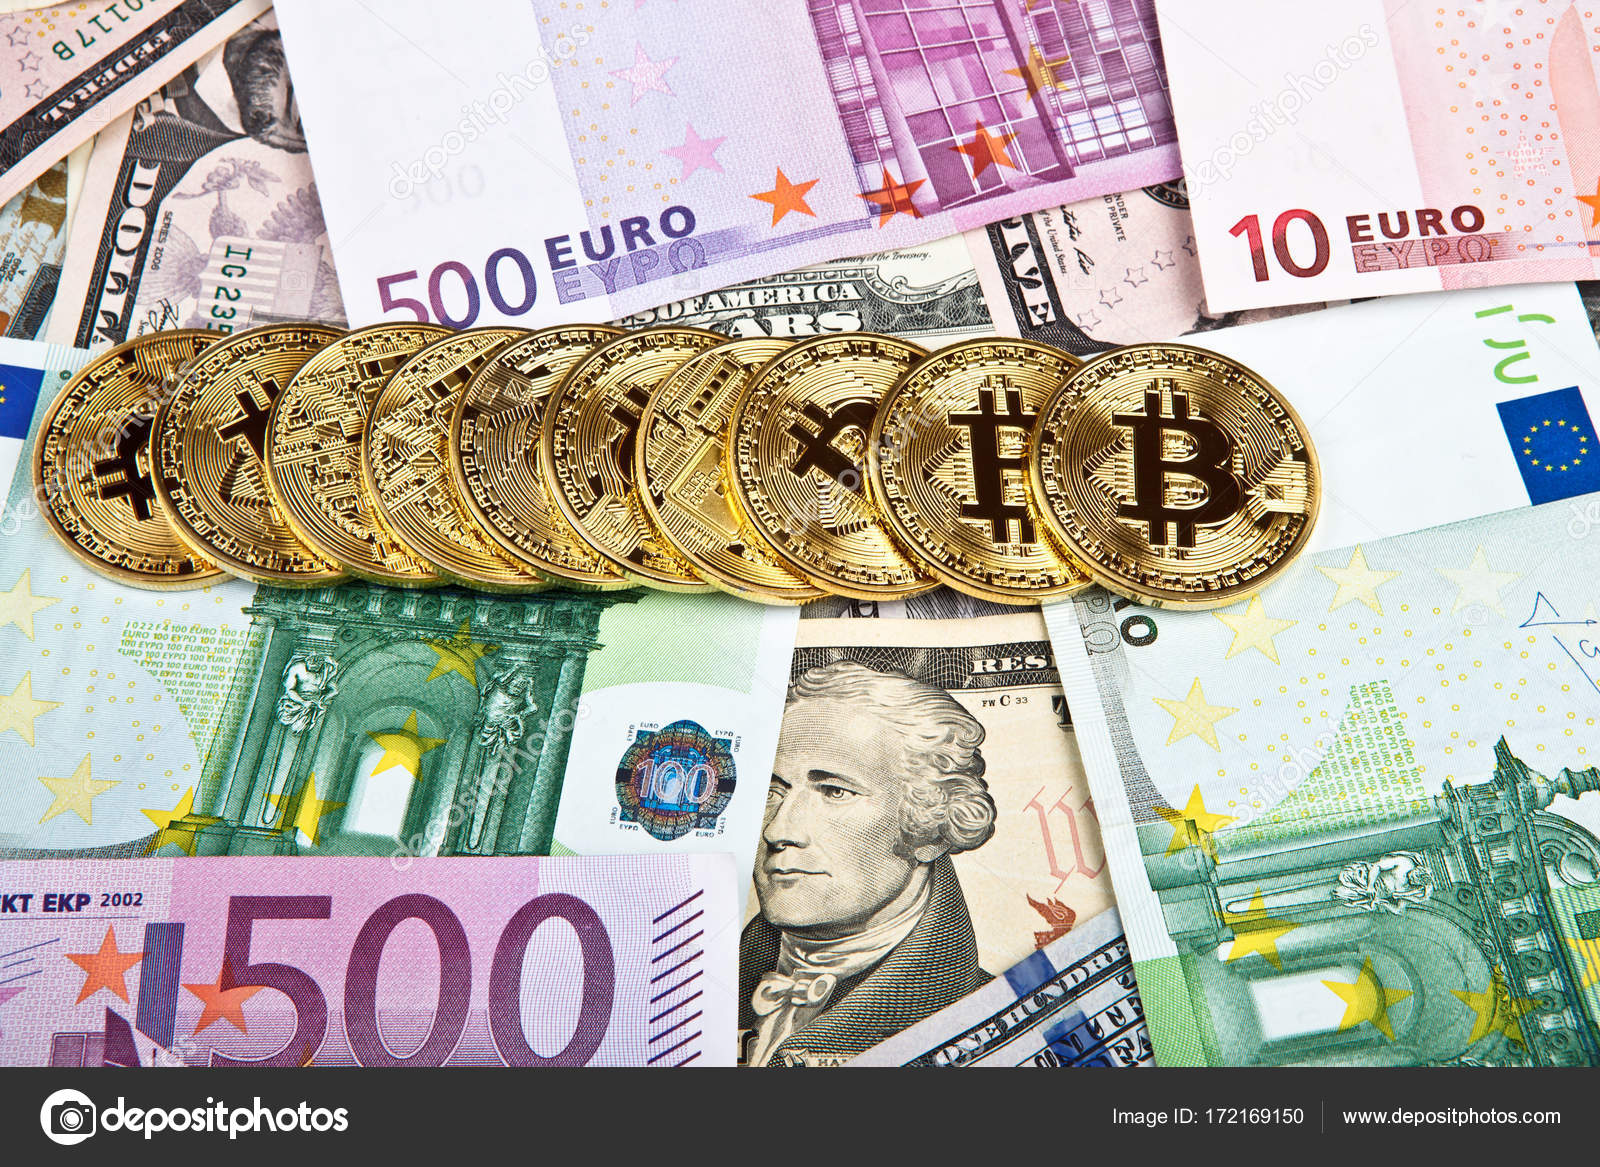 Bitcoin to euro 2010 elizabeth place dayton